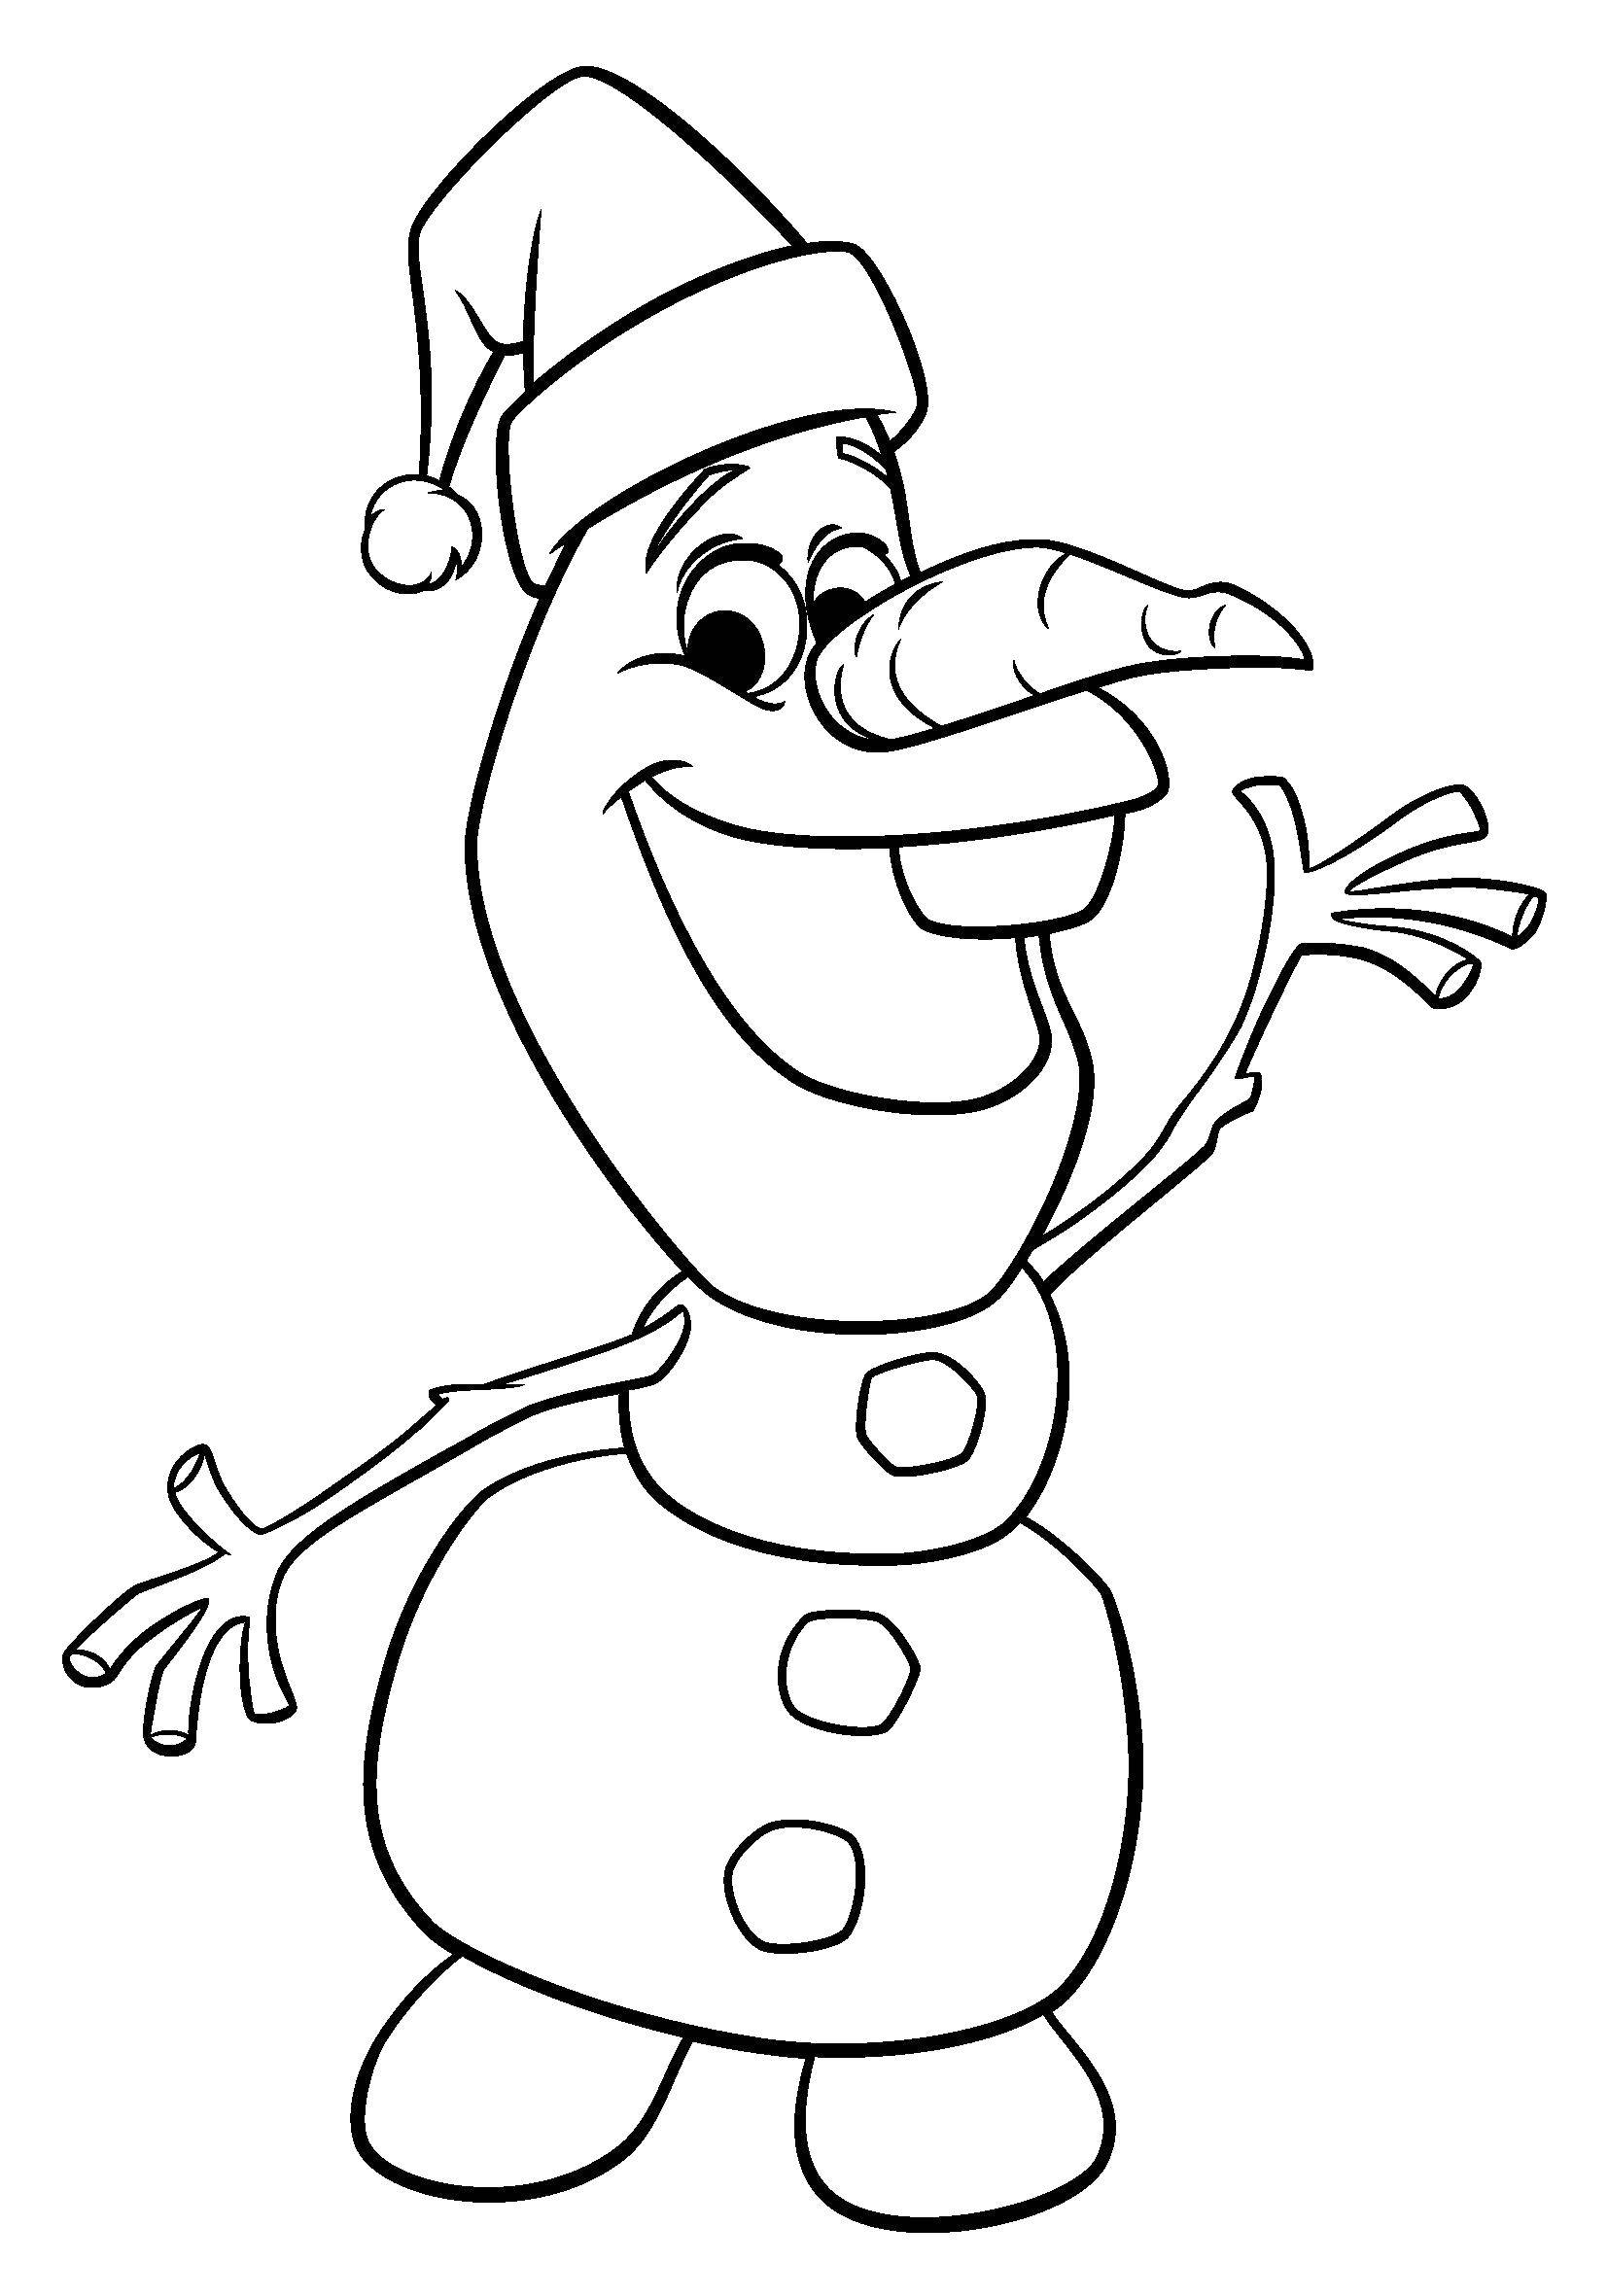 Название: Раскраска Снеговик из мультфильма .. Категория: раскраски холодное сердце. Теги: Дисней, Эльза, Холодное сердце, принцесса.